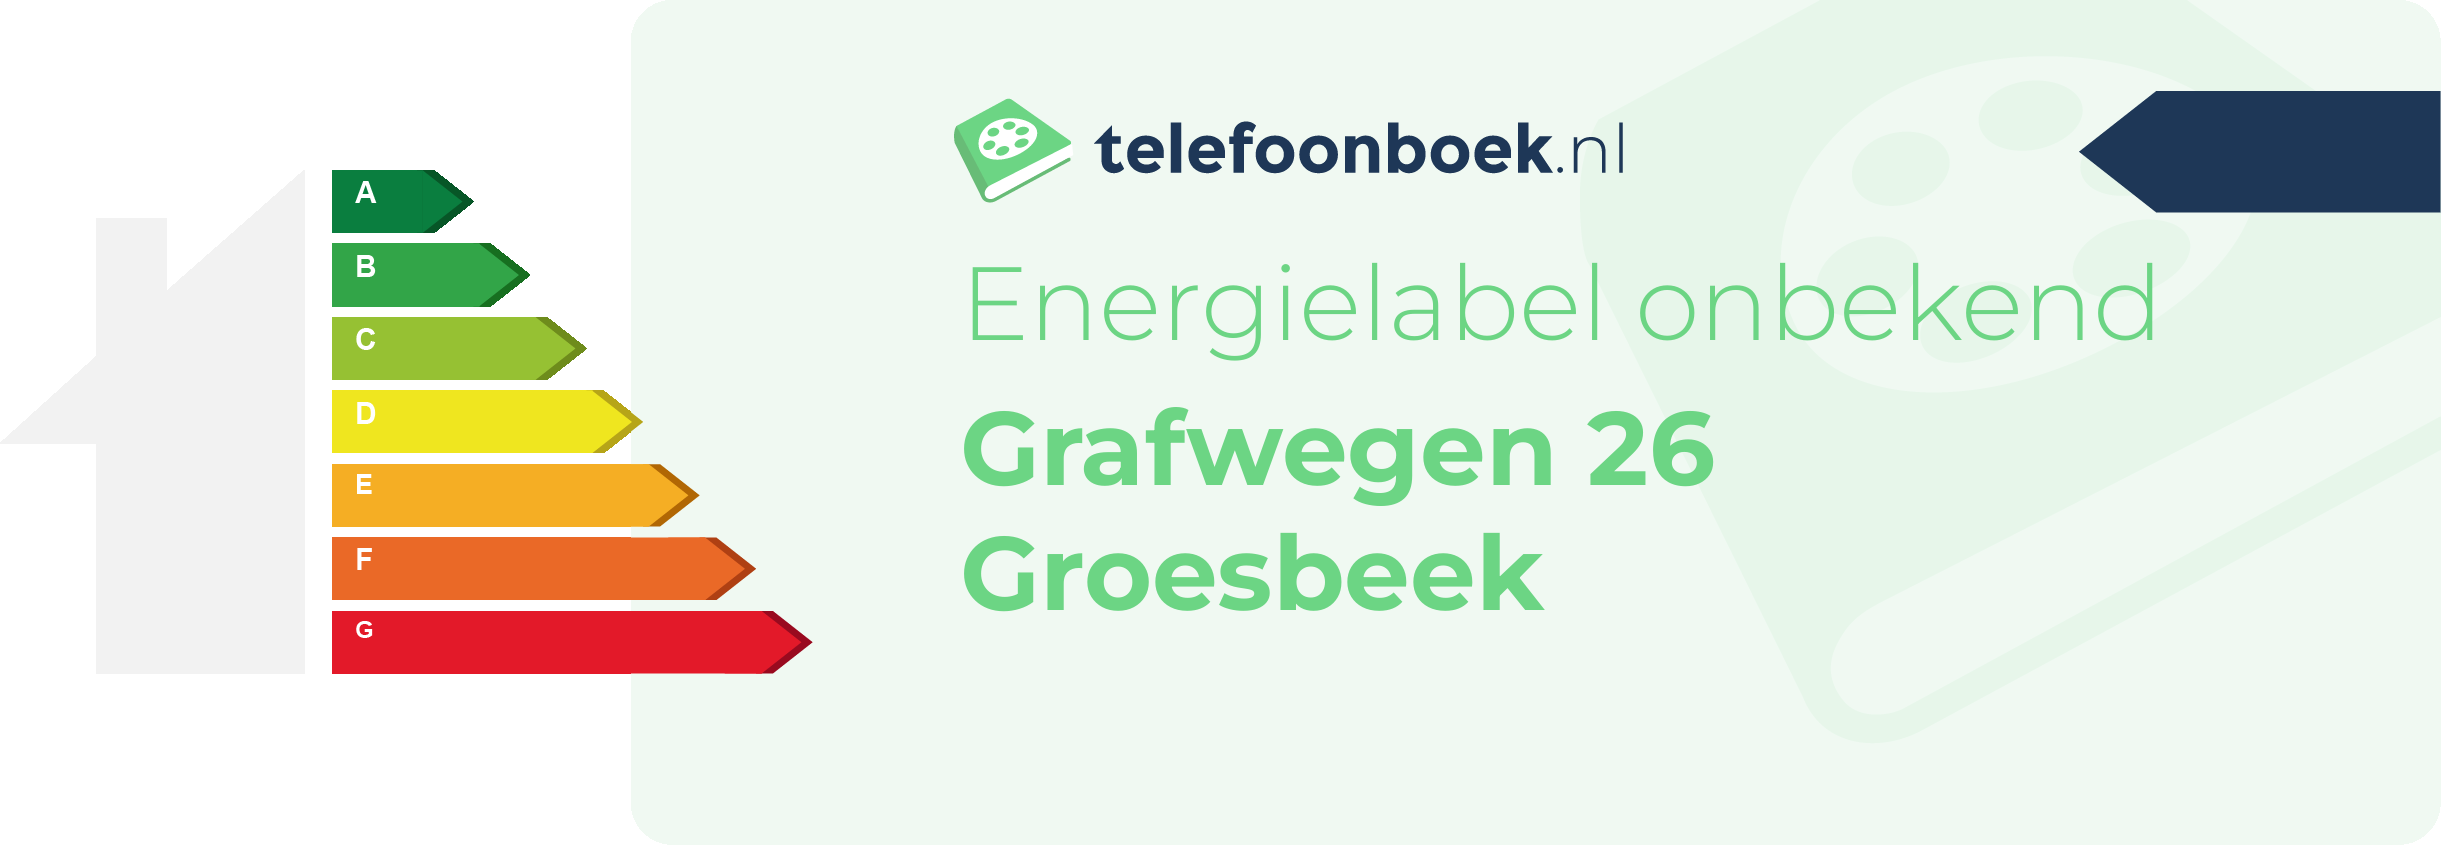 Energielabel Grafwegen 26 Groesbeek